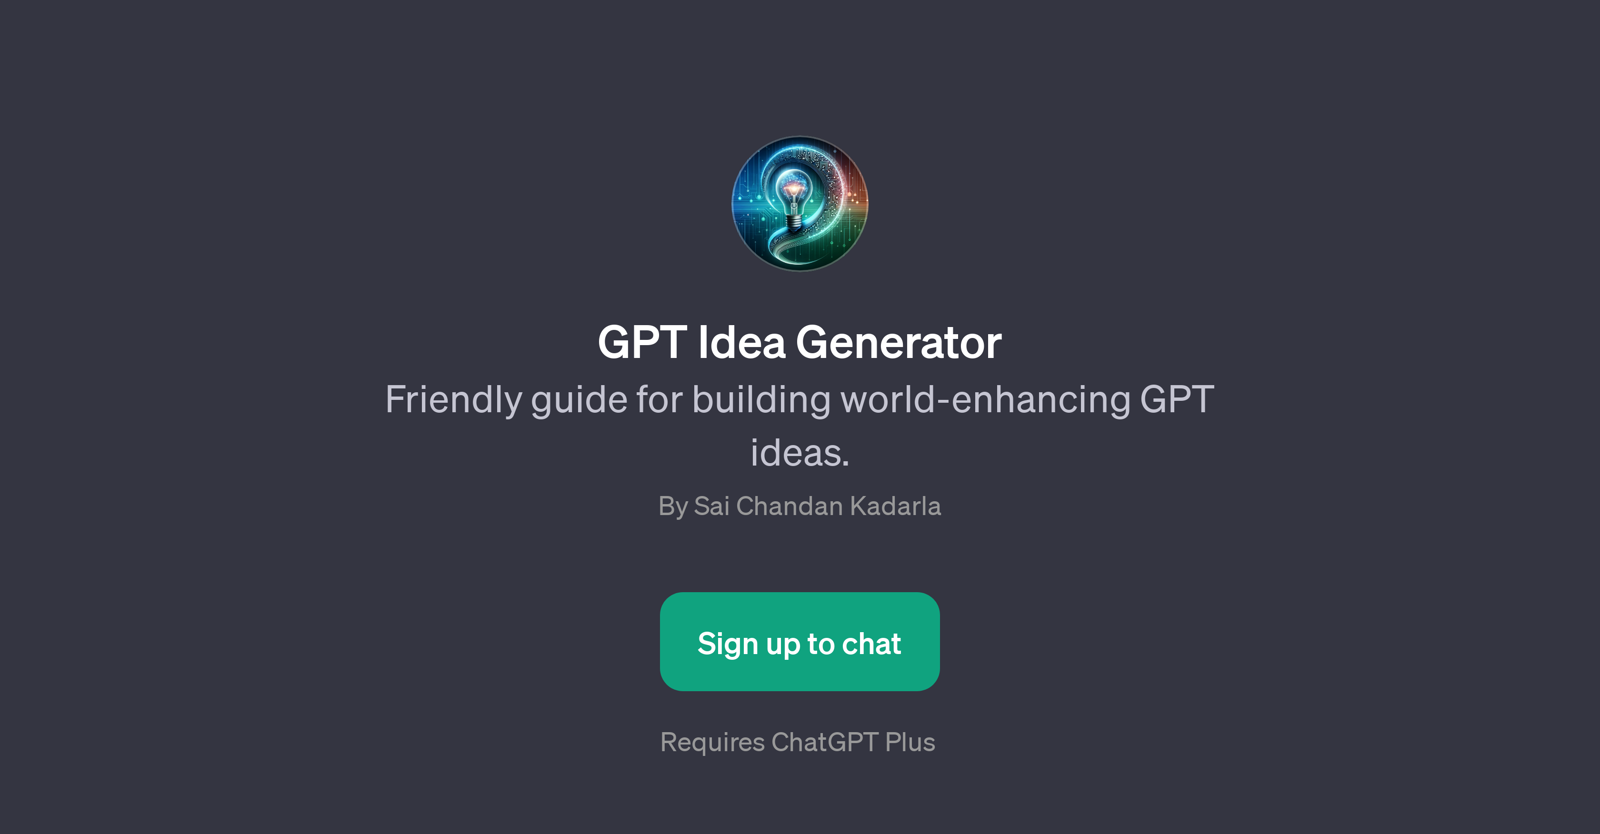 GPT Idea Generator website